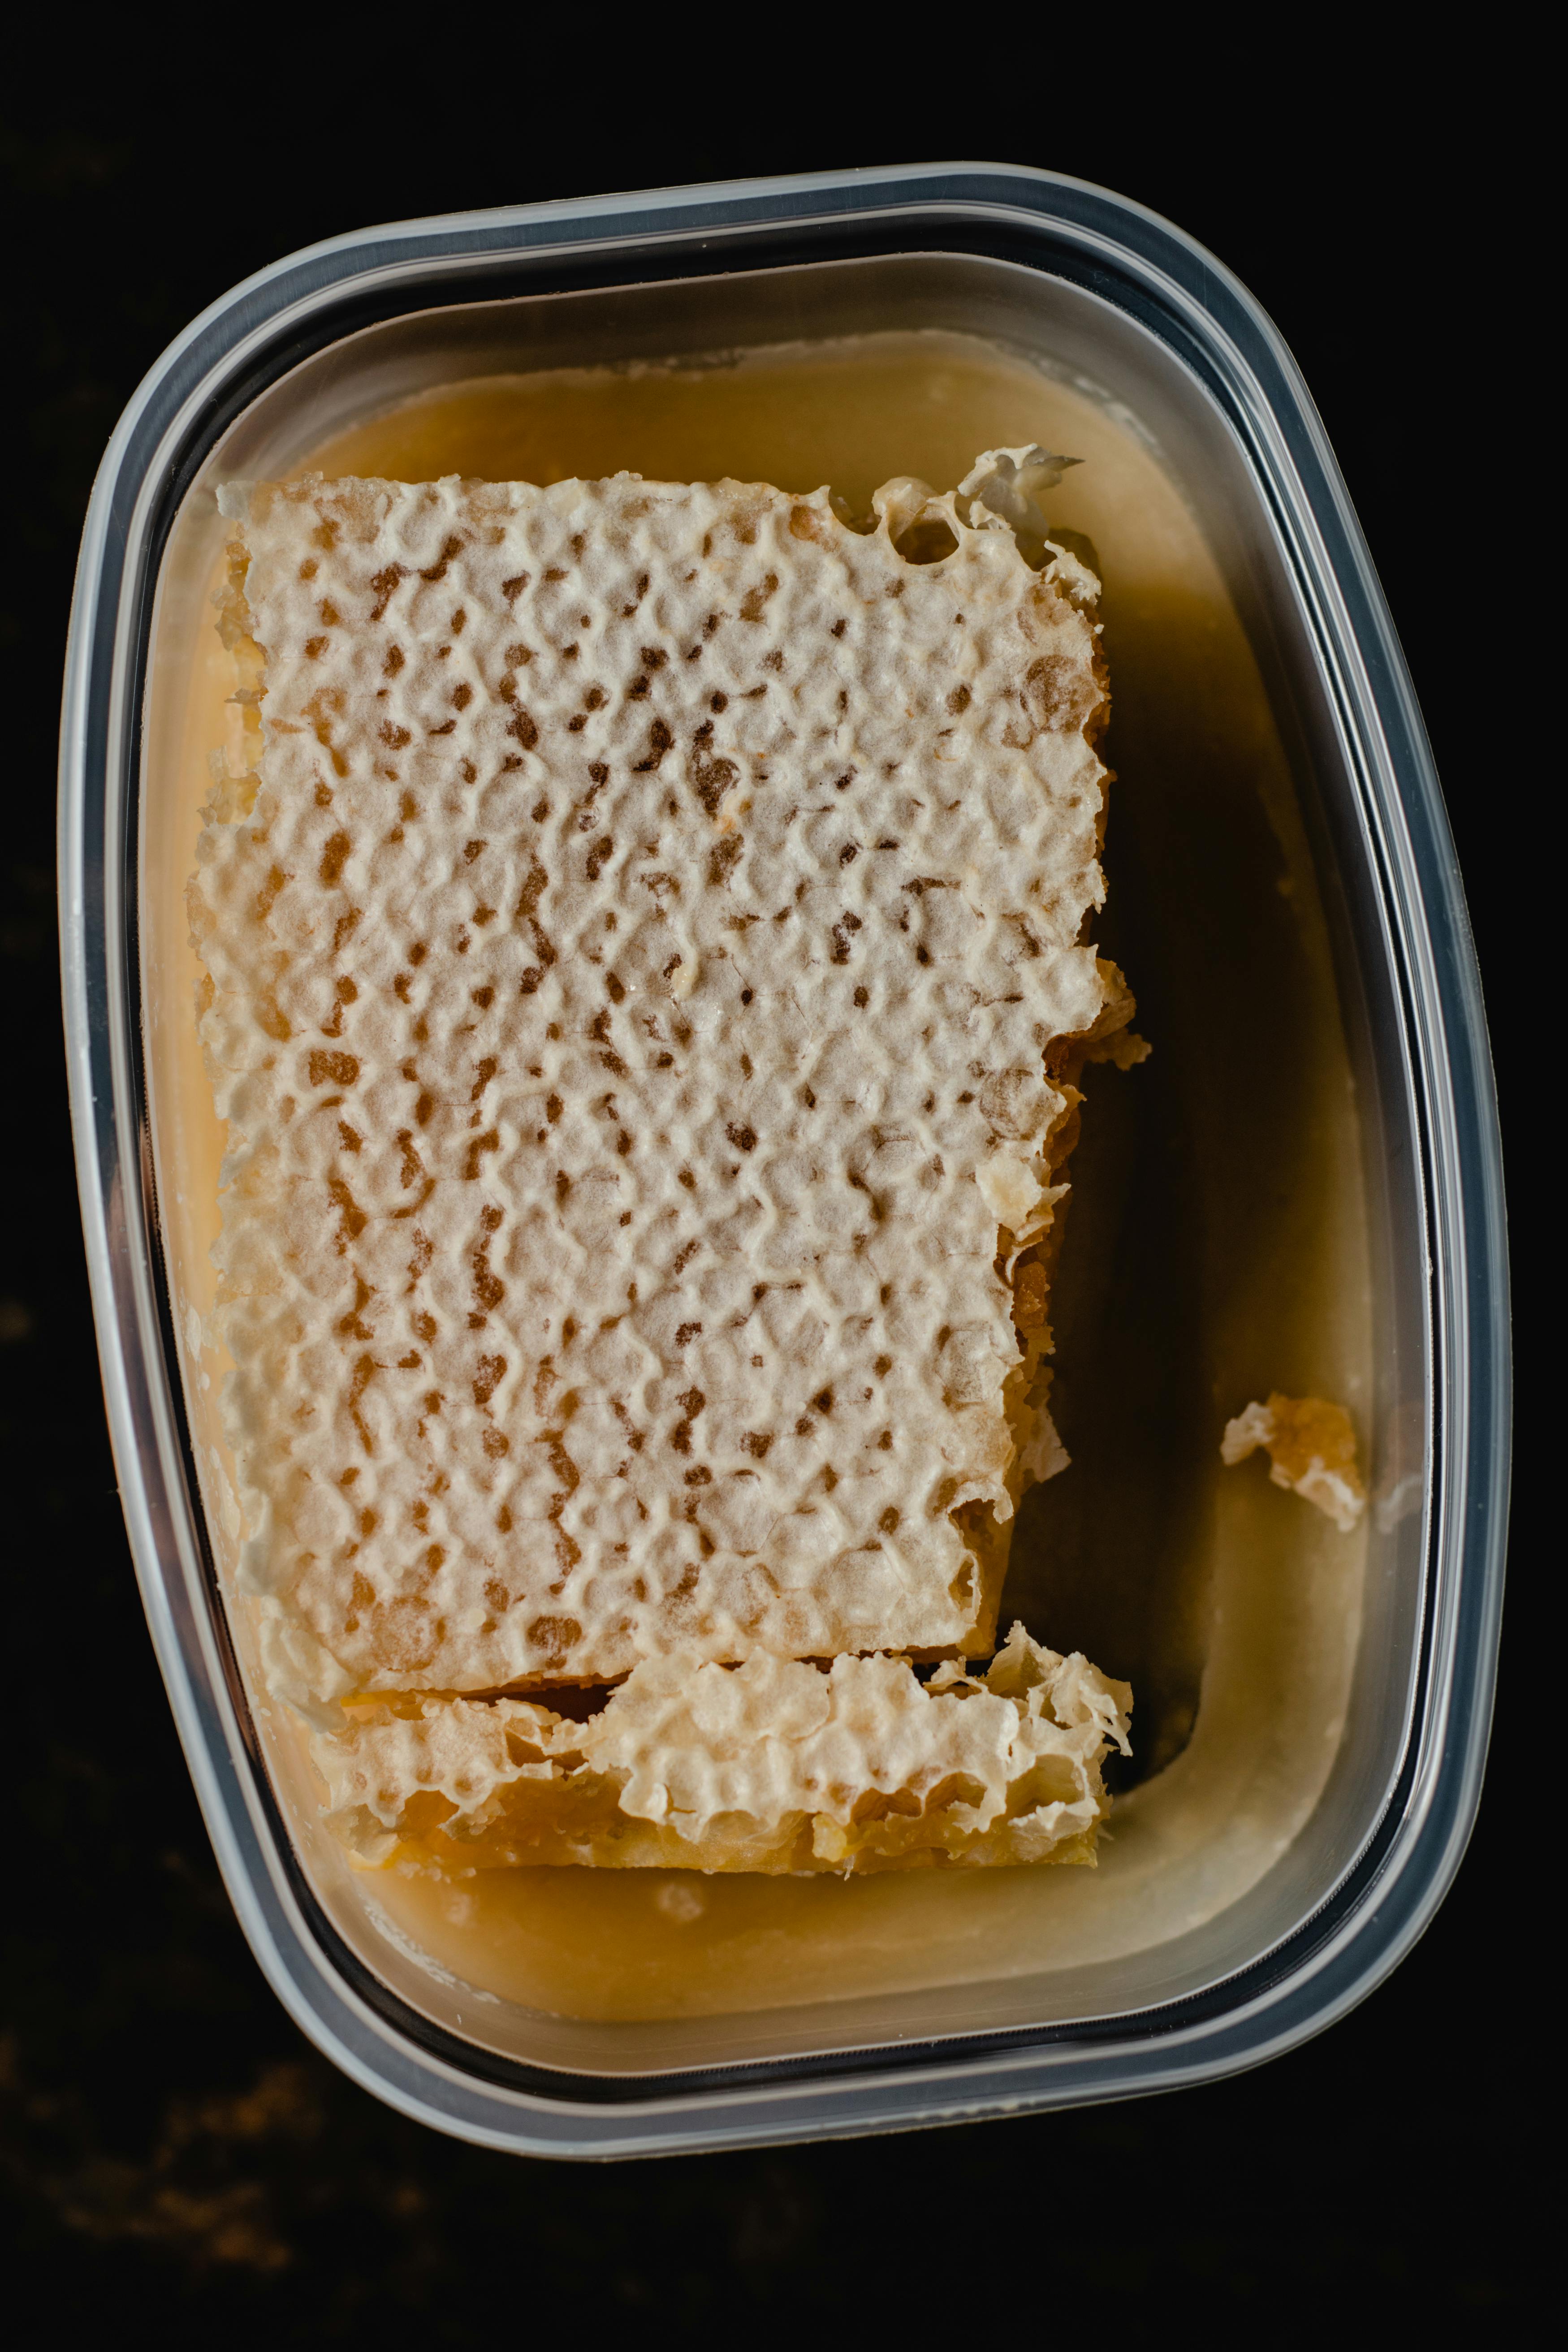 Properties of honey